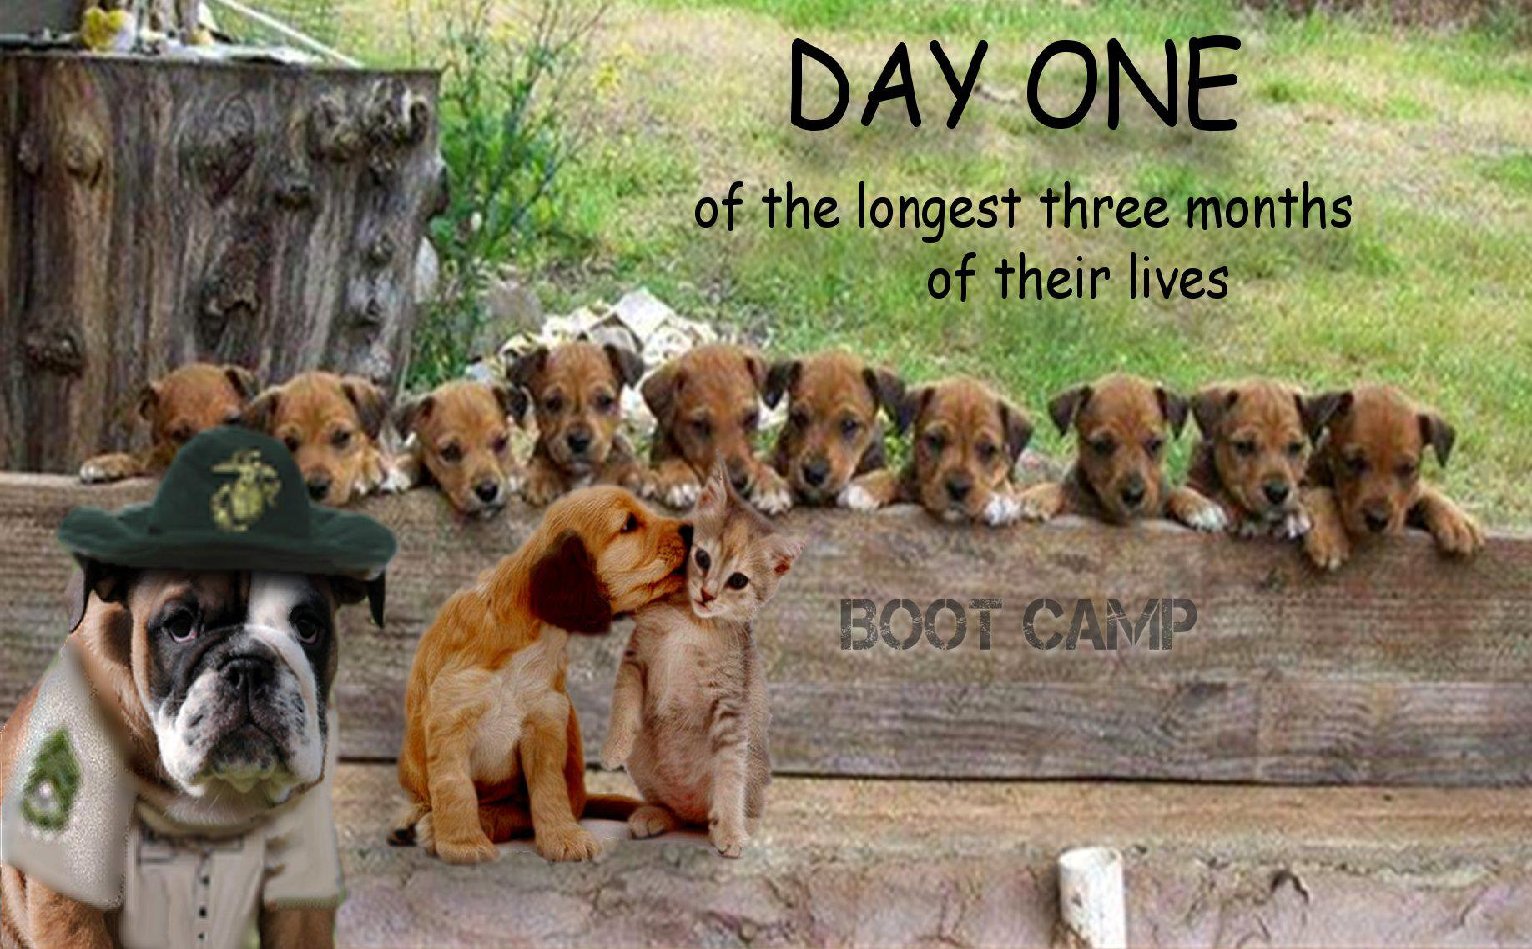 Usmc Hond Boot Camp Wallpaper